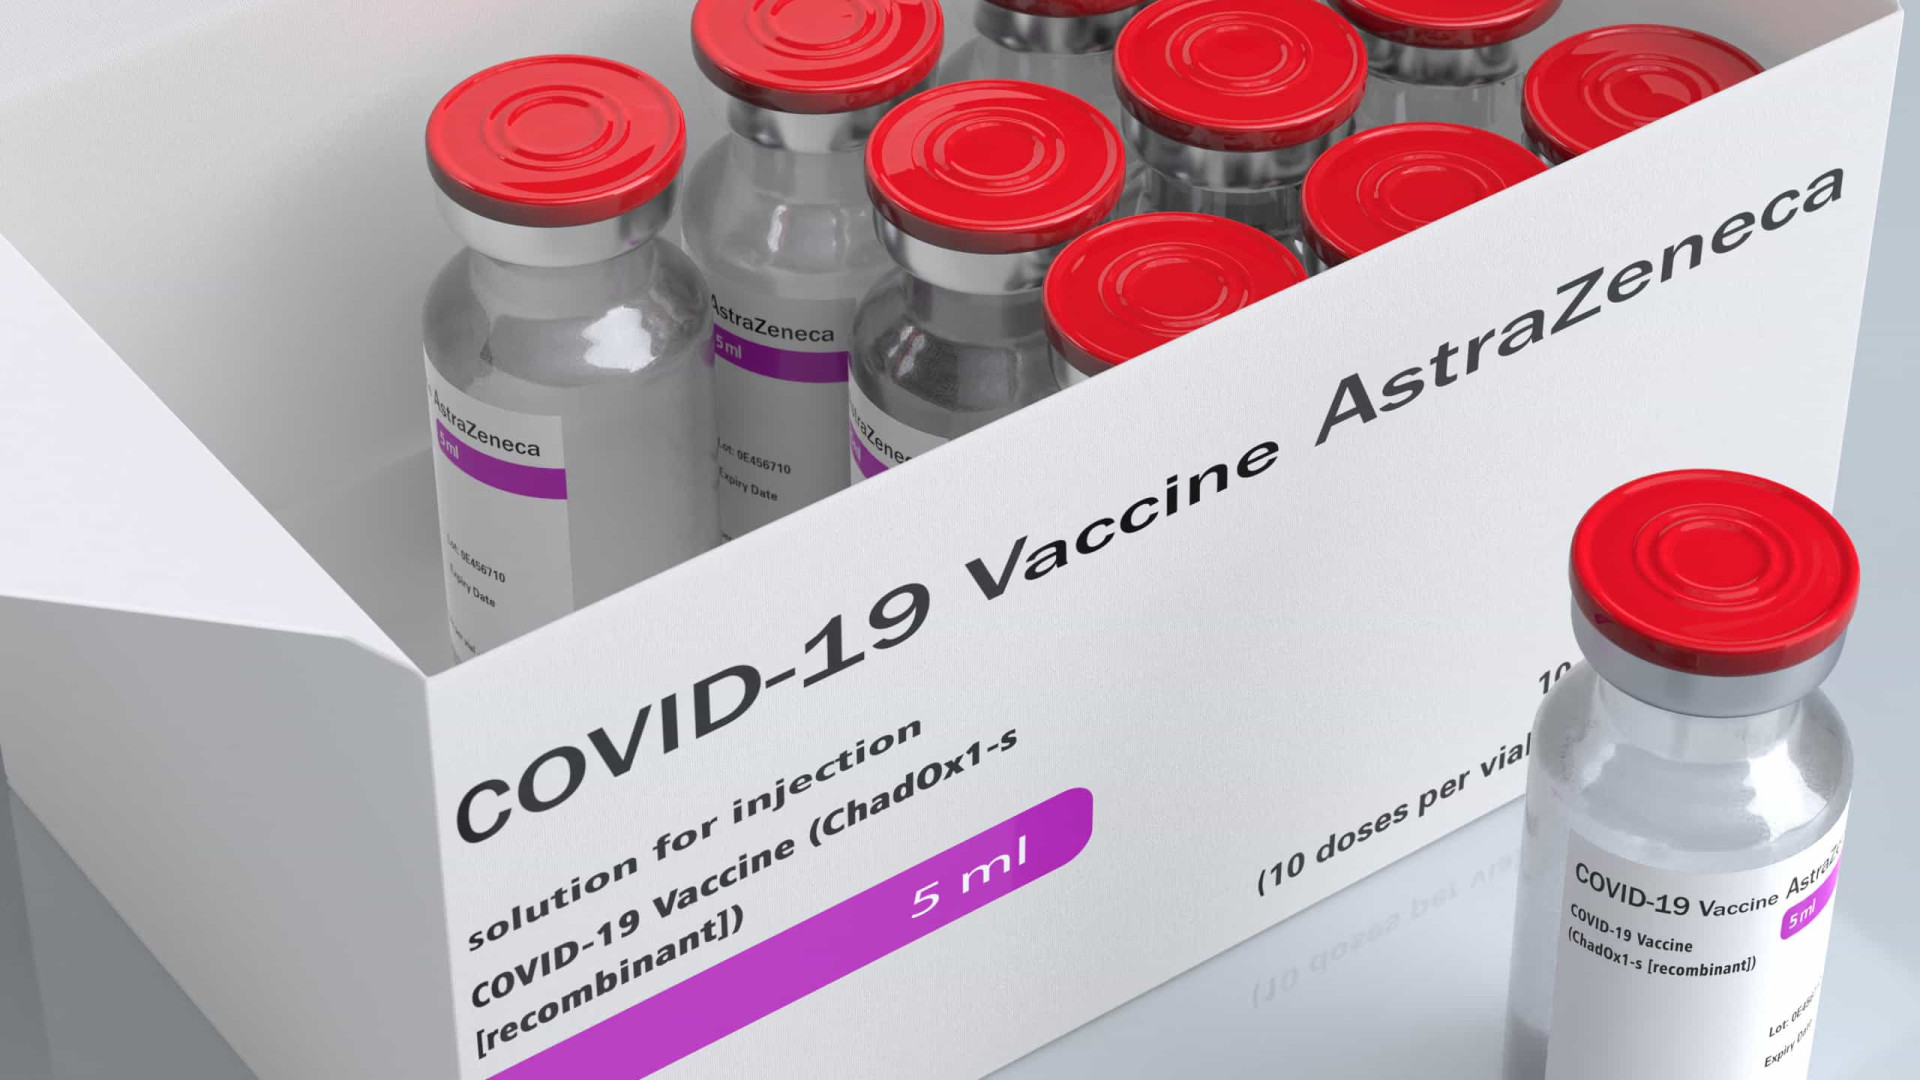 Autoridade de saúde dos EUA pede que AstraZeneca revise dados de eficácia de vacina contra Covid-19